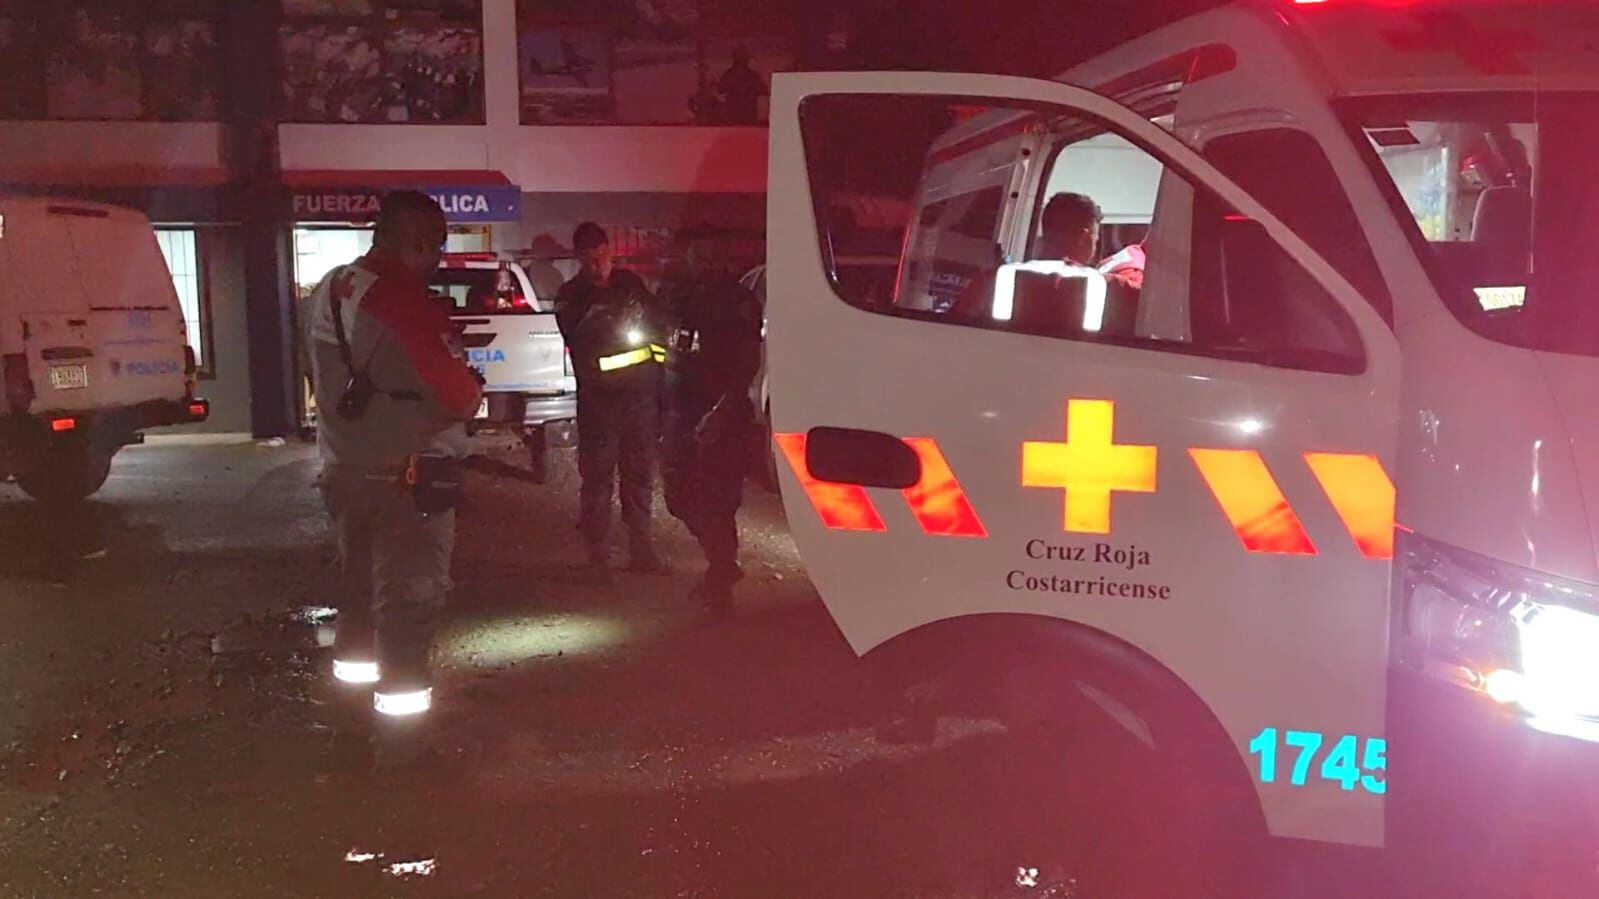 La Cruz Roja Costarricense atendió a dos de los heridos, los otros dos hombres fueron trasladados al centro médico en un vehículo particular. Fotografía: Edgar Chinchilla.